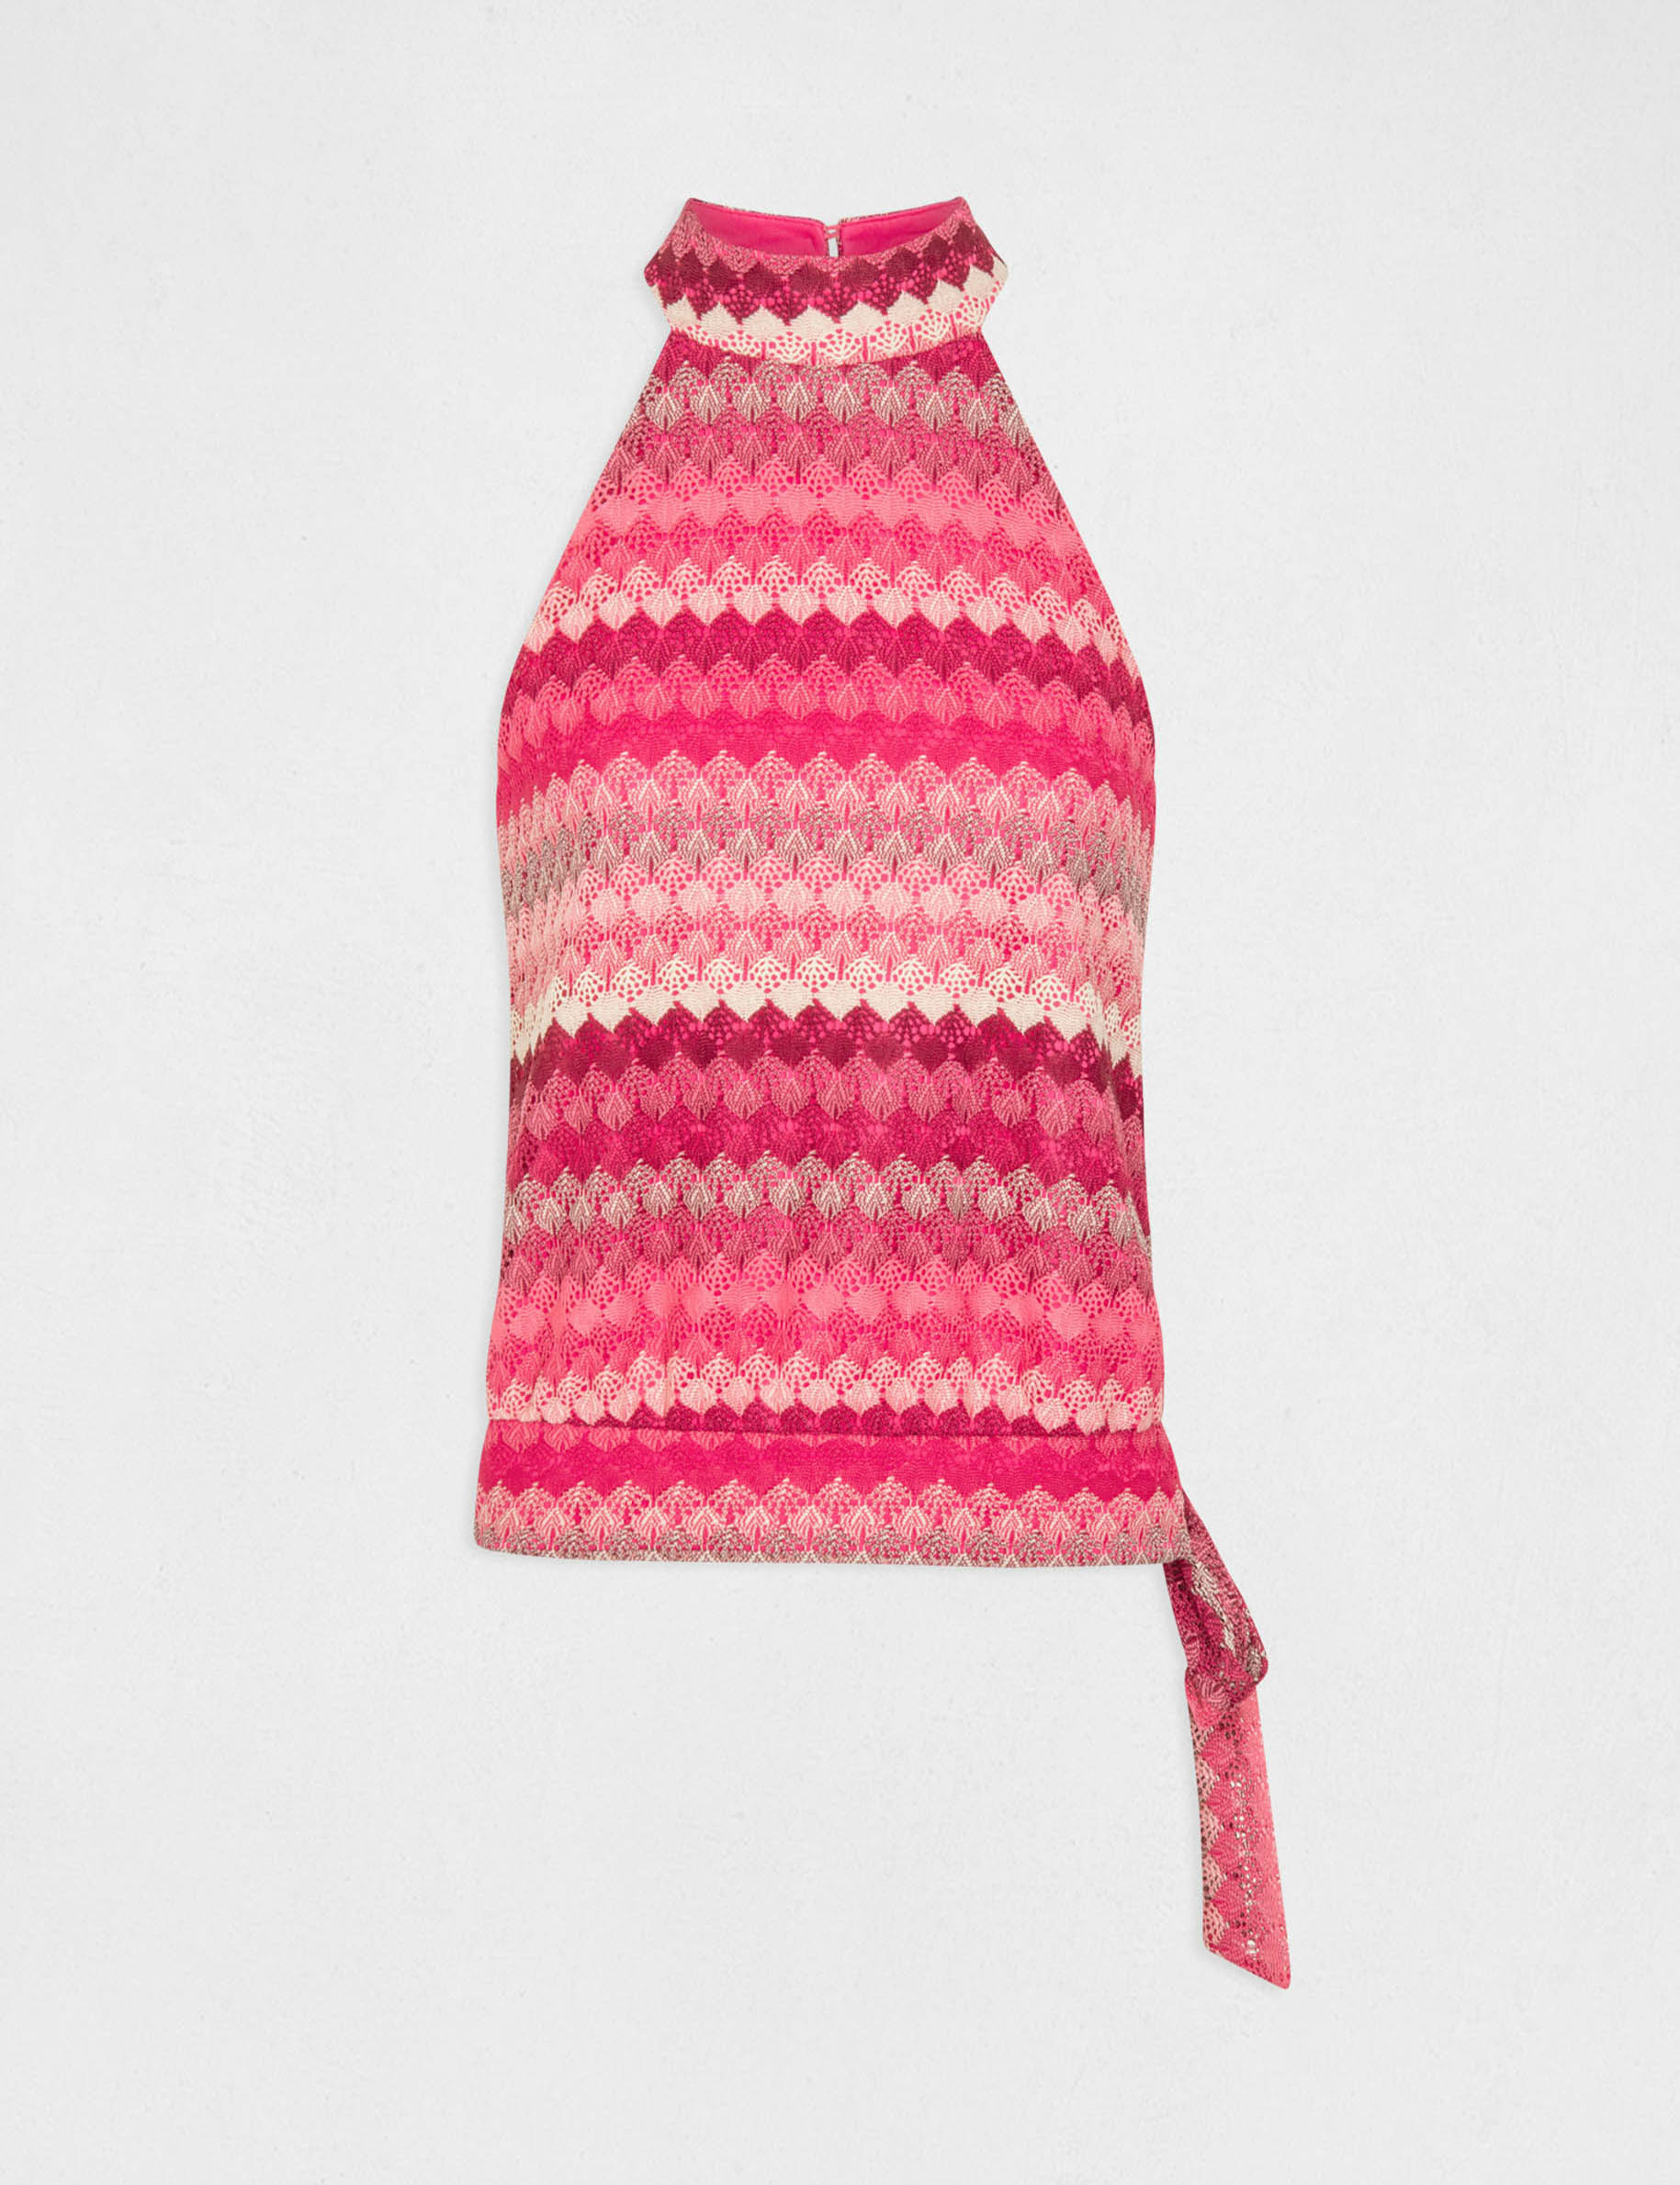 Crochet vest top with halter neck pink ladies'